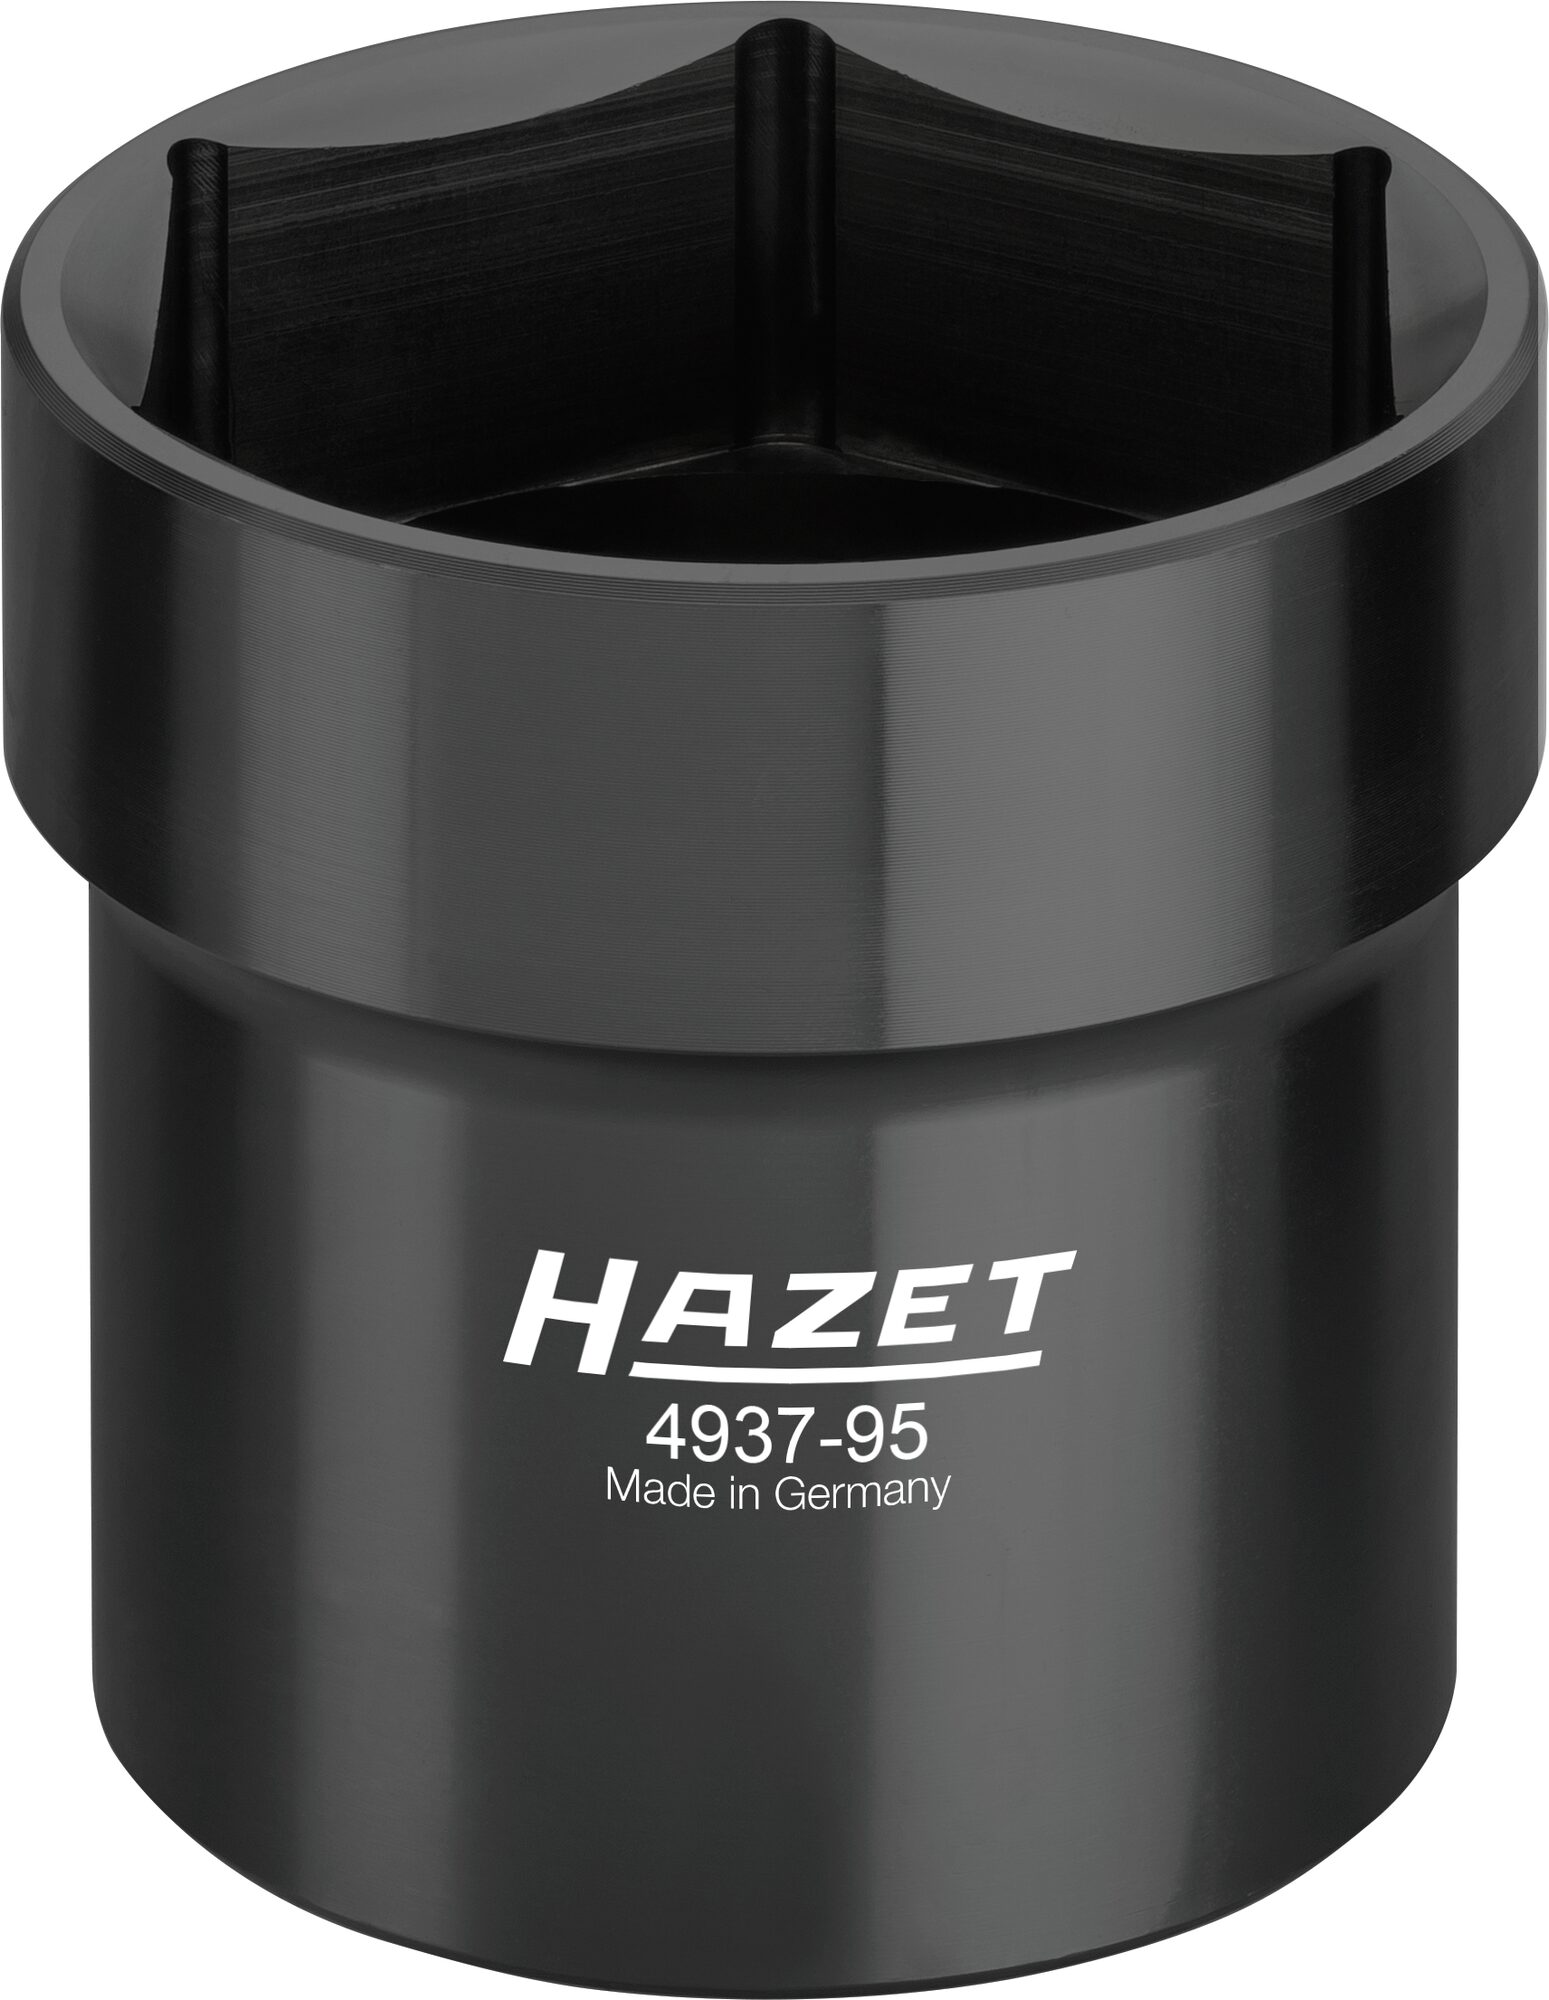 HAZET Nkw Ölkappen/ Achsmutter-Steckschlüssel 4937-95 · Vierkant hohl 20 mm (3/4 Zoll) · 95 mm